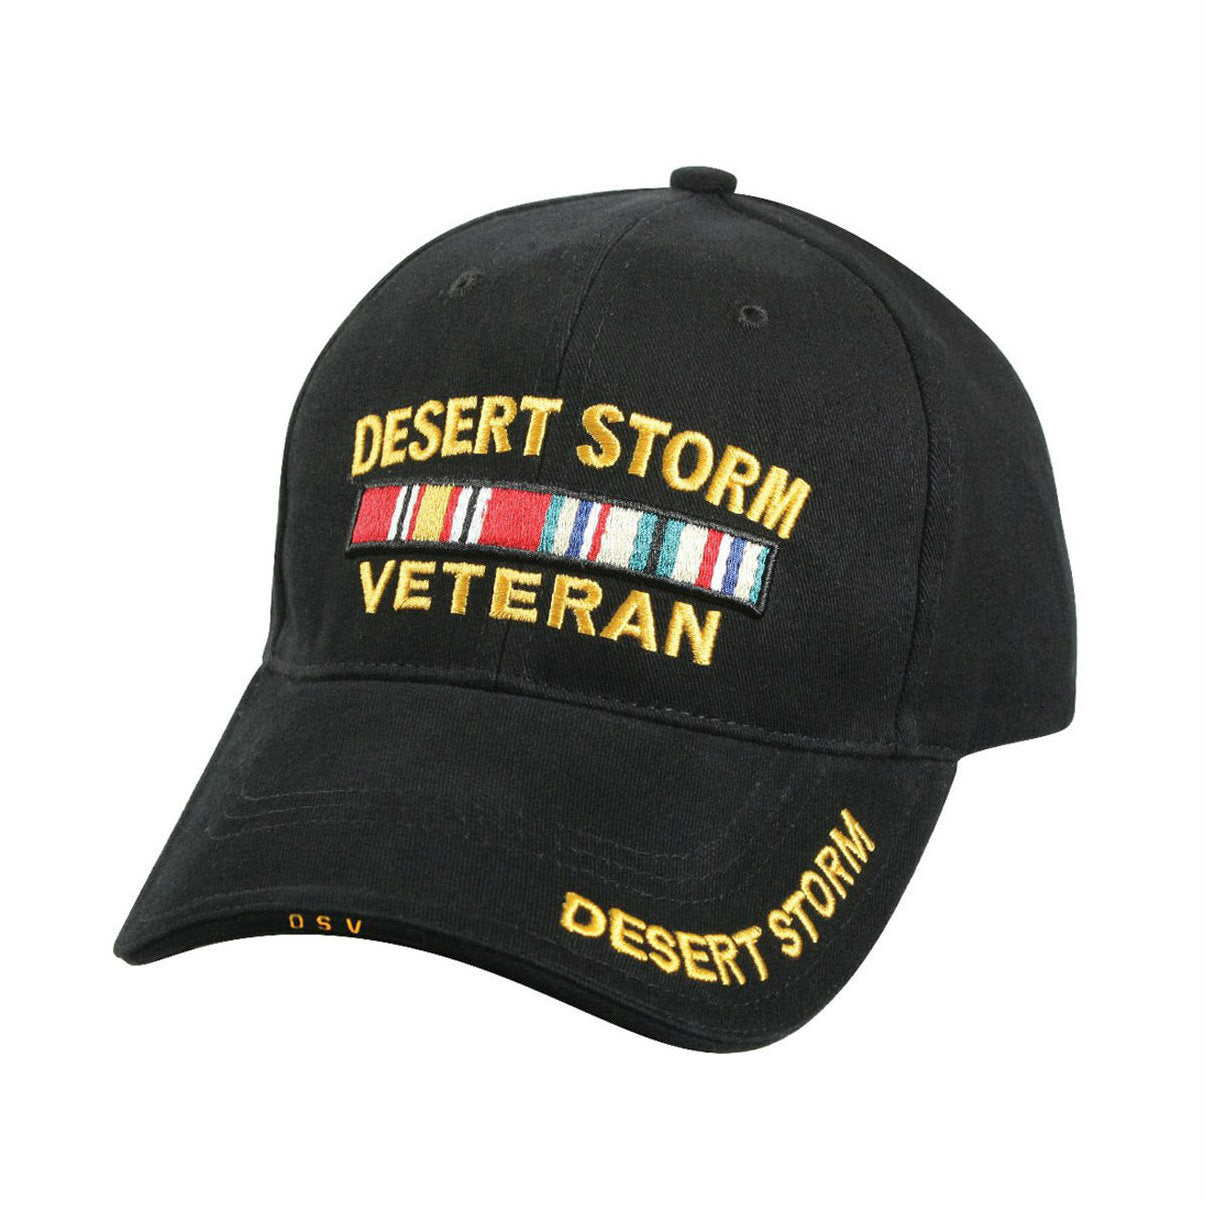 Desert Storm Veteran Hat Black